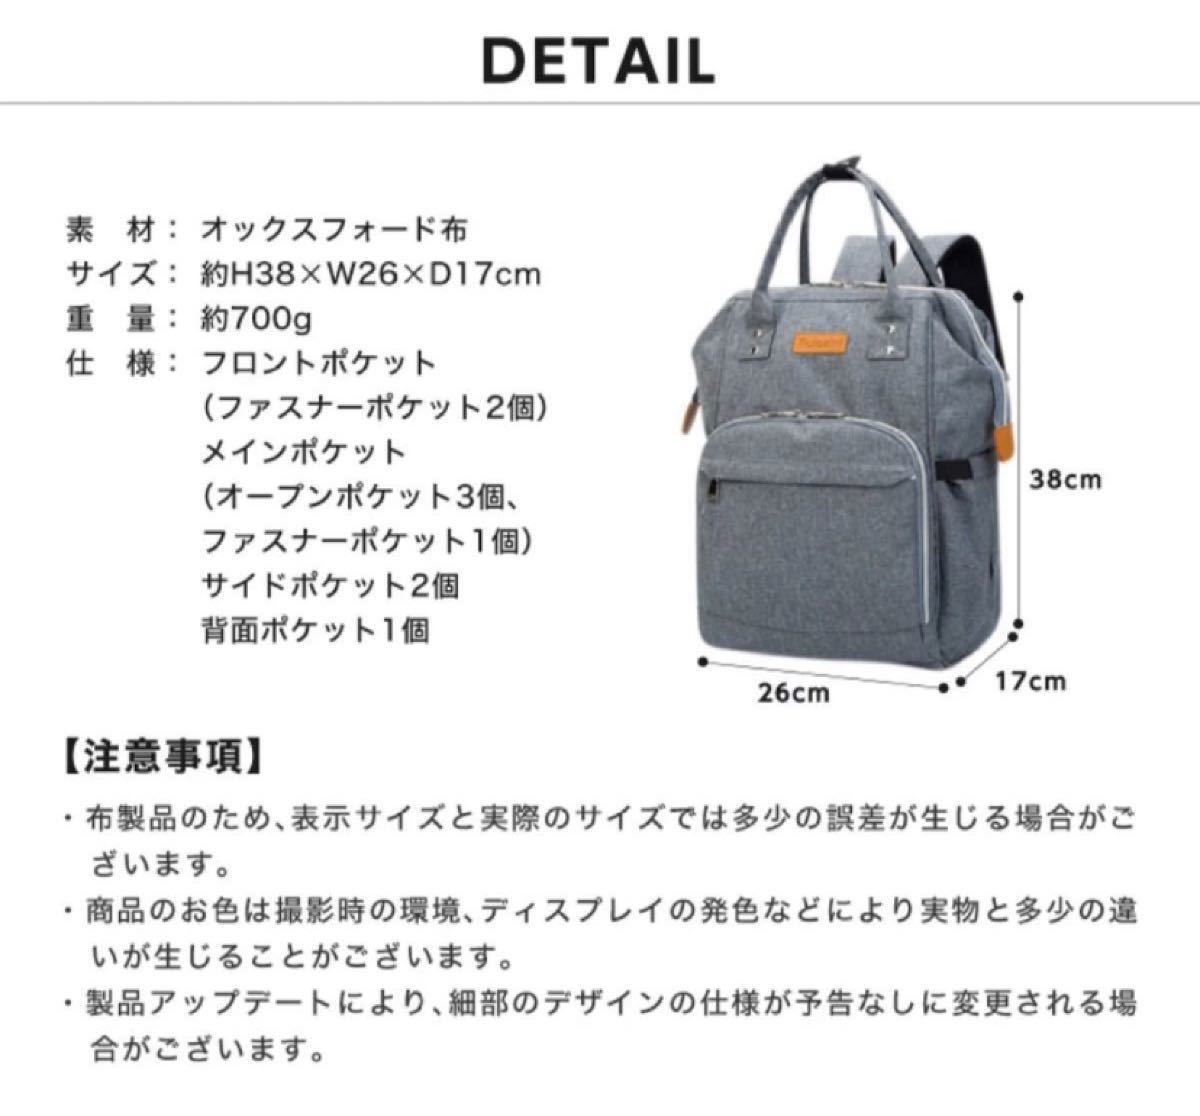 【新品】 マザーズバッグ マザーズリュック バックパック 背面ポケット ママリュック バッグ 軽量 便利 大容量 多機能 多収納